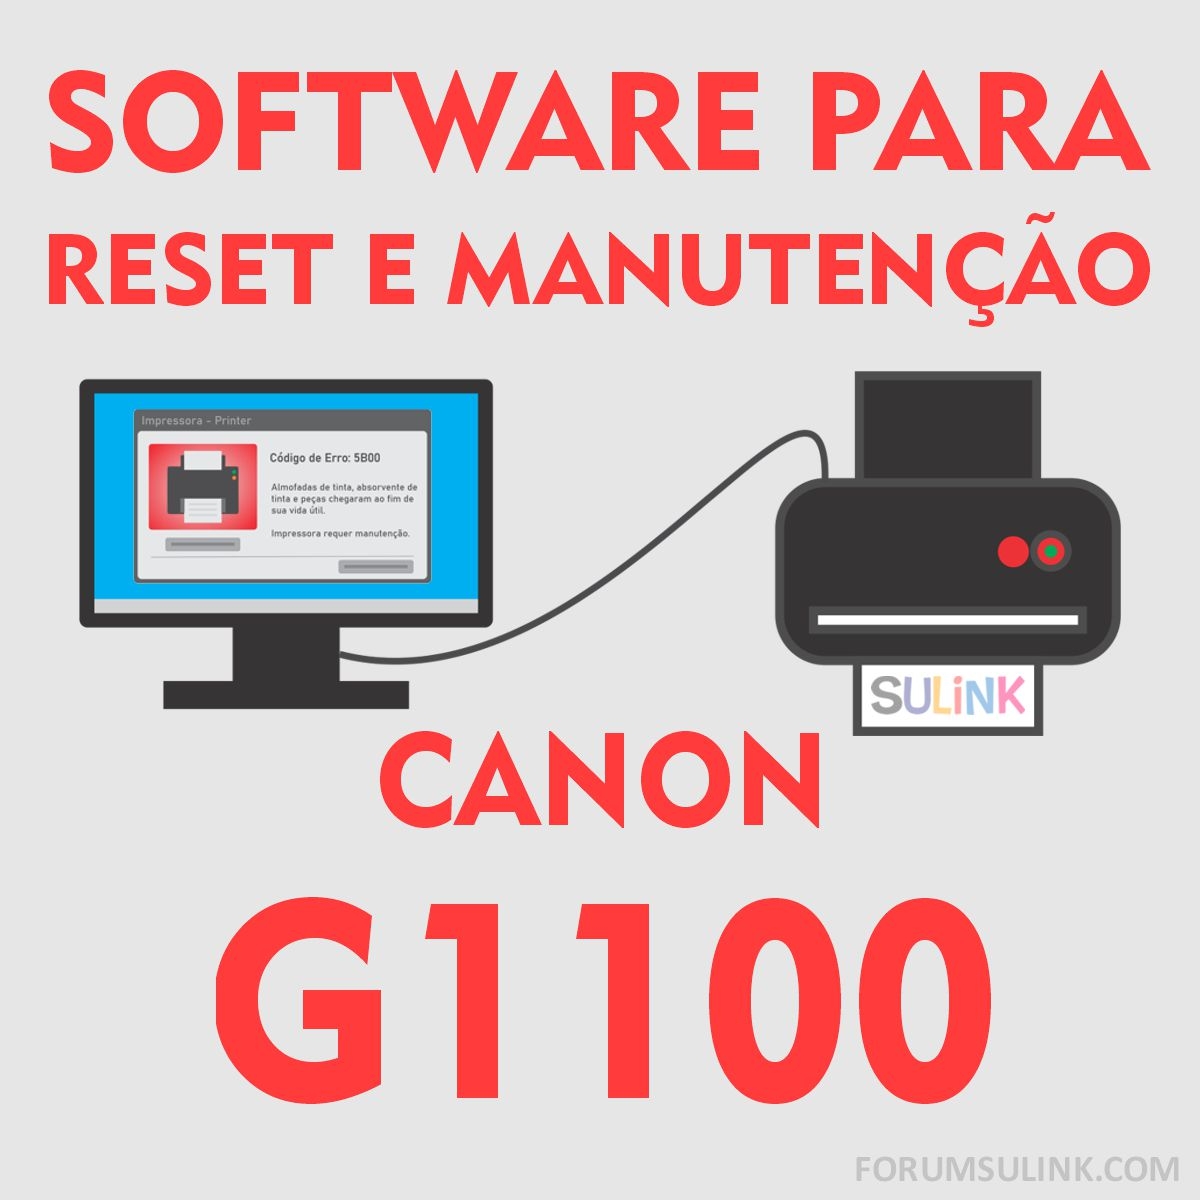 Canon G1100 | Software para Reset das Almofadas e Manutenção